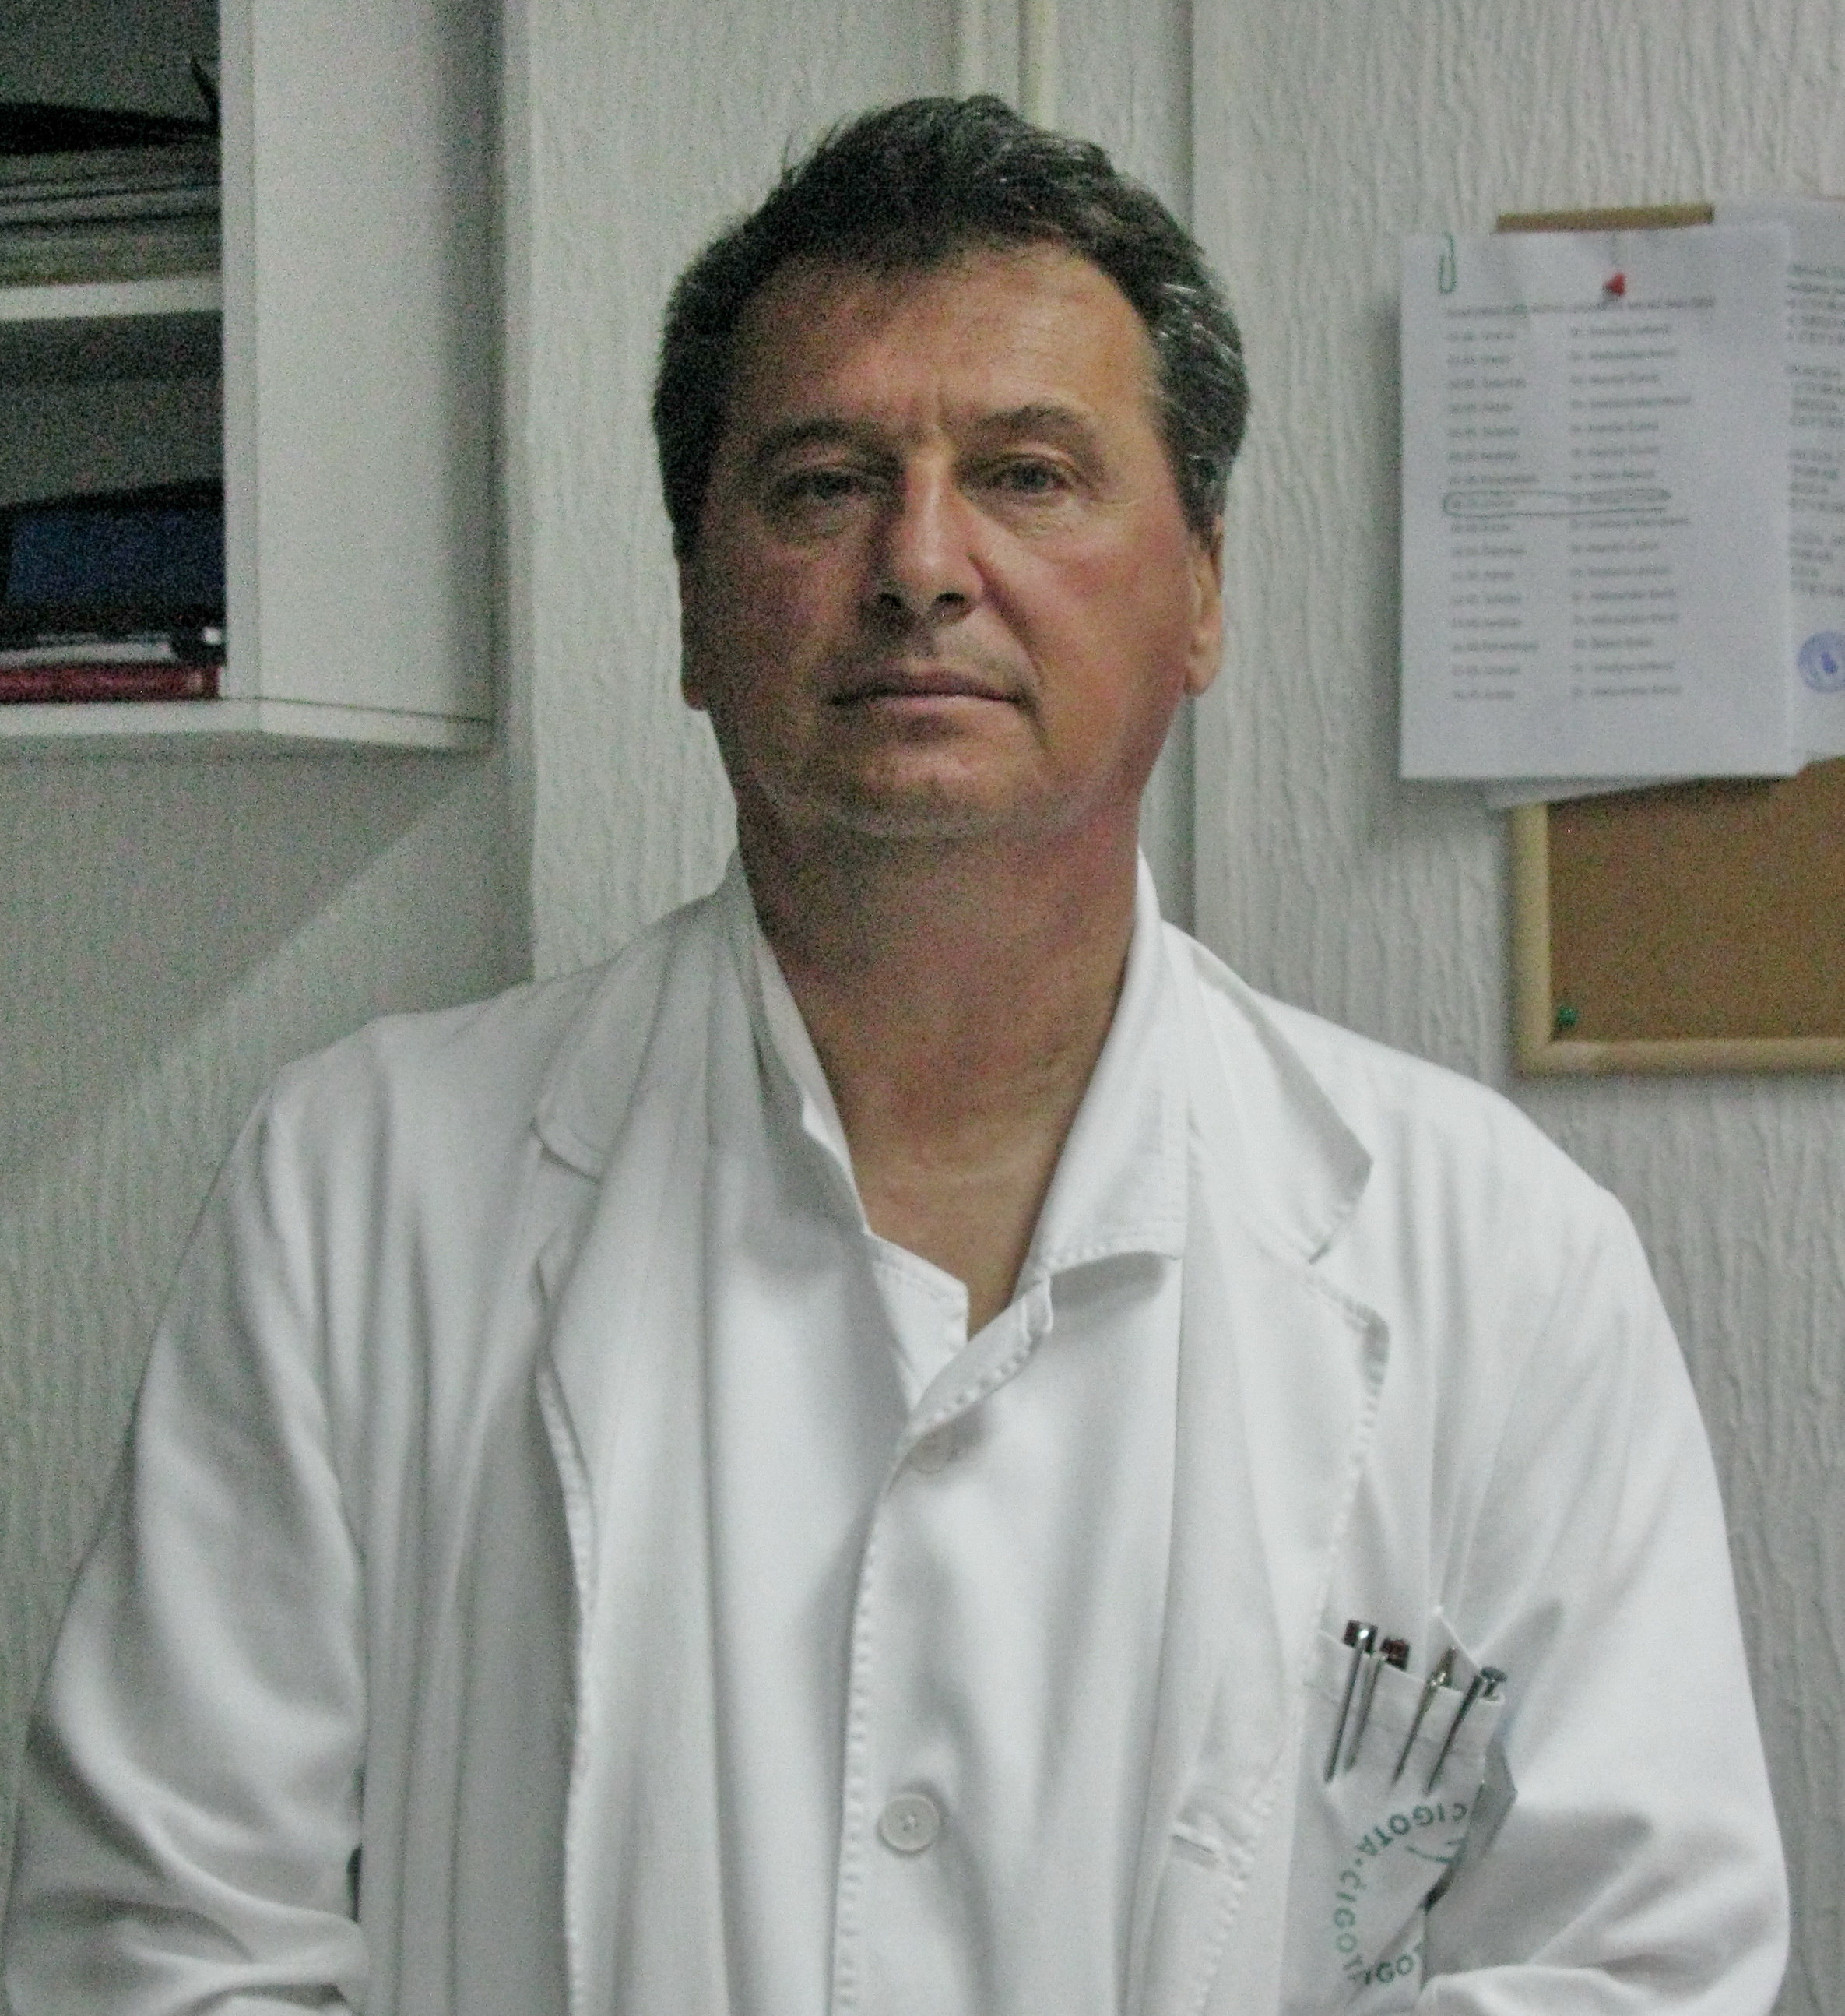 Specijalista interne medicine - kardiolog u kabinetu za kardiopulmonalnu dijagnostiku, dr Nenad Crnčević